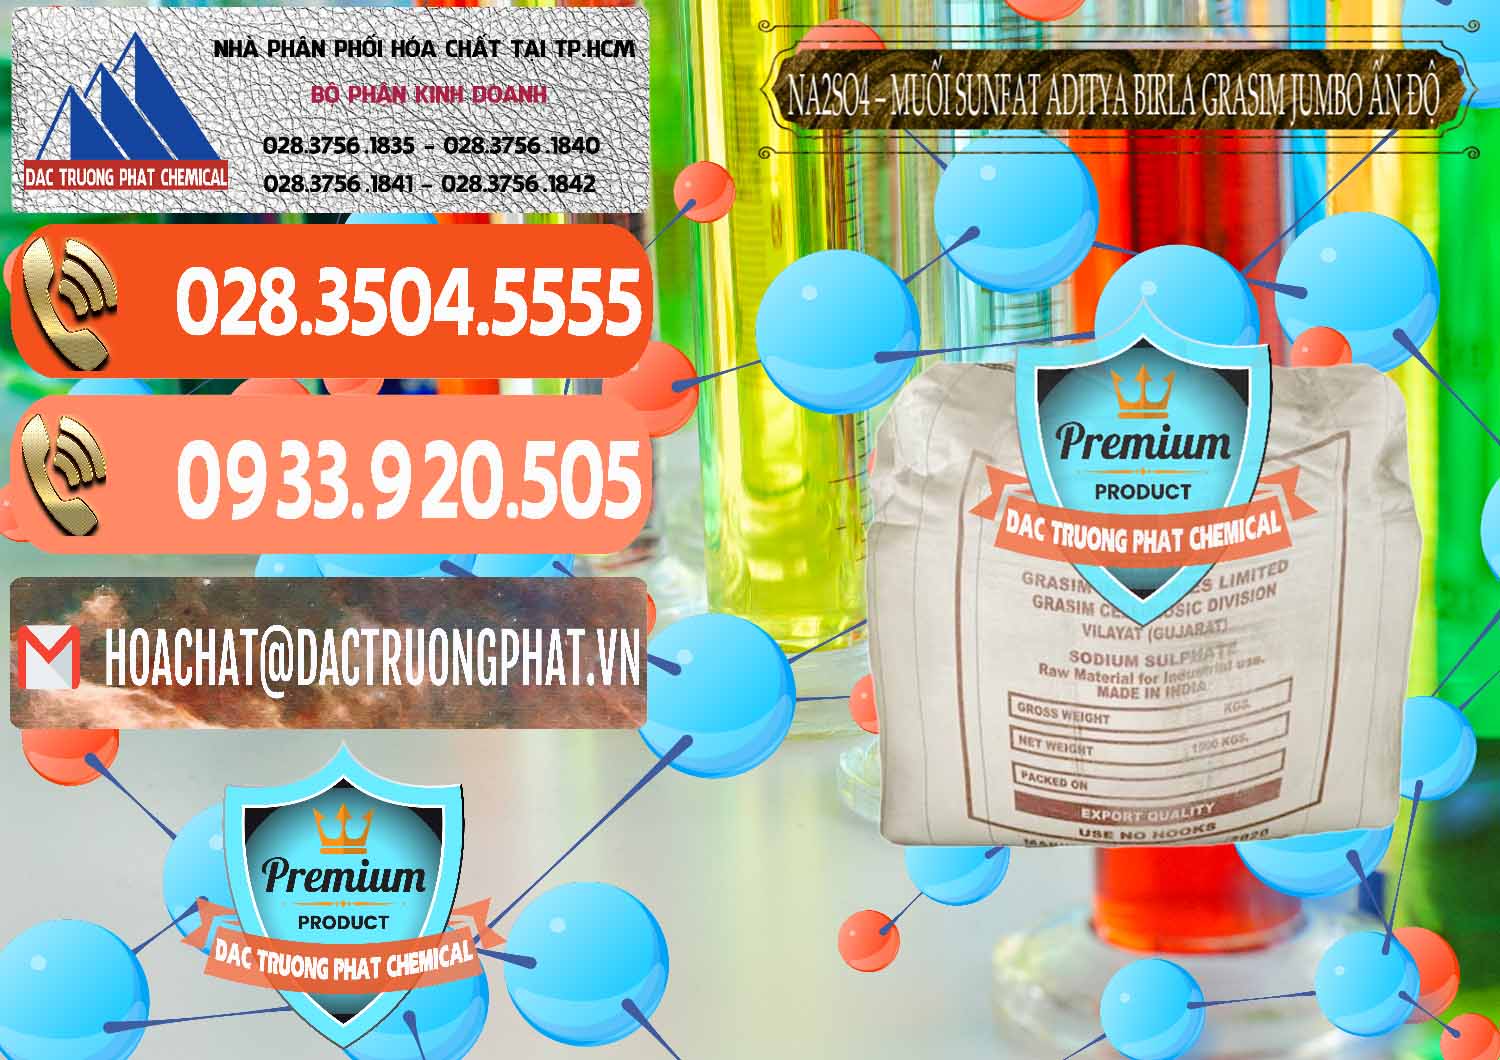 Nơi bán và cung cấp Sodium Sulphate - Muối Sunfat Na2SO4 Jumbo Bành Aditya Birla Grasim Ấn Độ India - 0357 - Công ty kinh doanh & cung cấp hóa chất tại TP.HCM - hoachatmientay.com